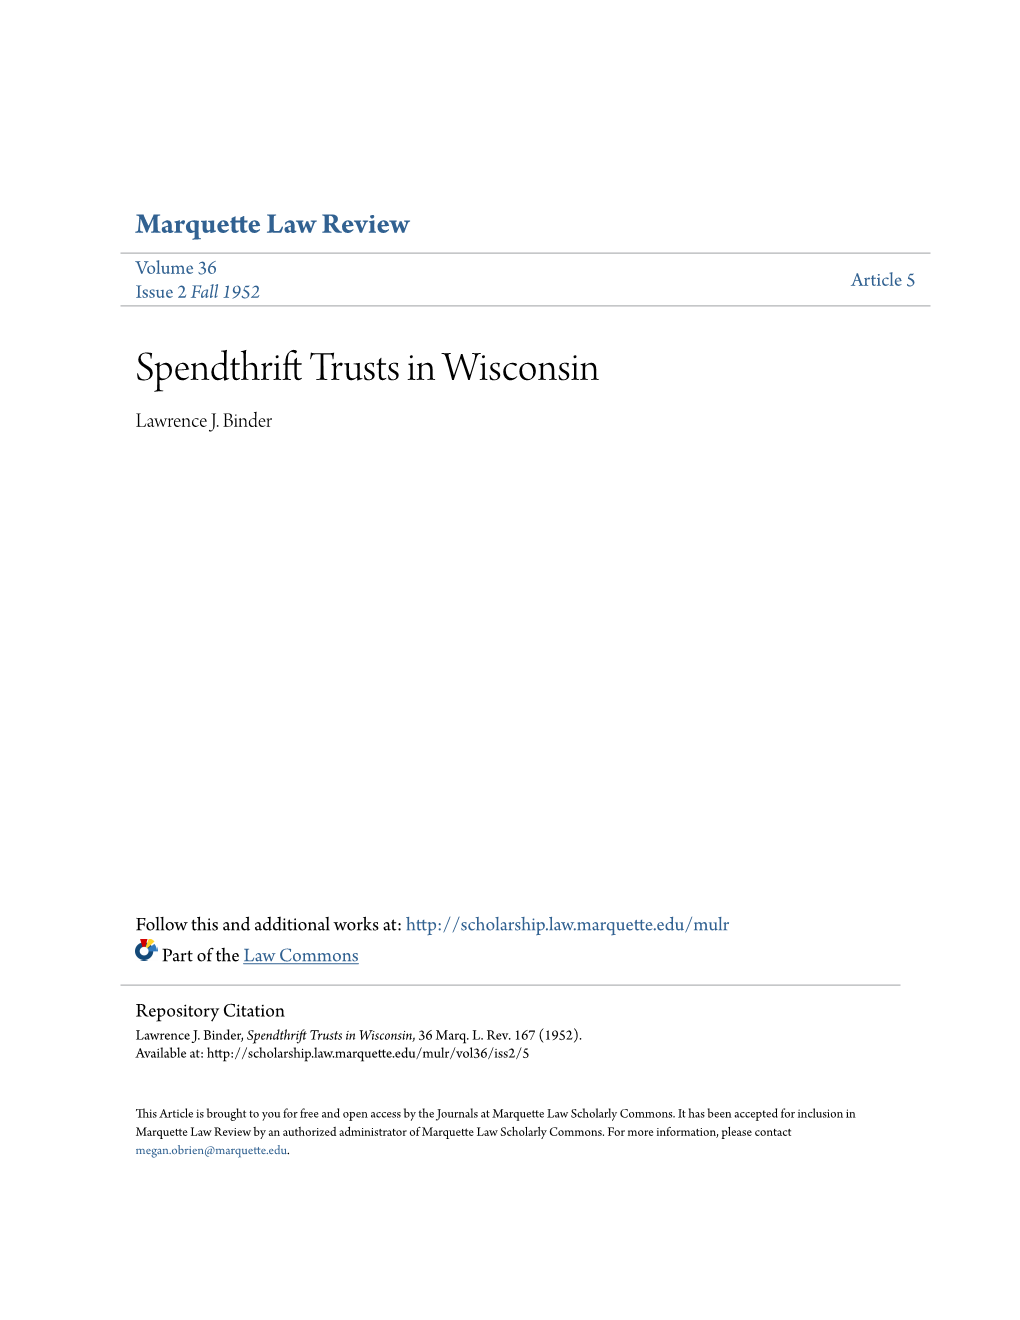 Spendthrift Trusts in Wisconsin